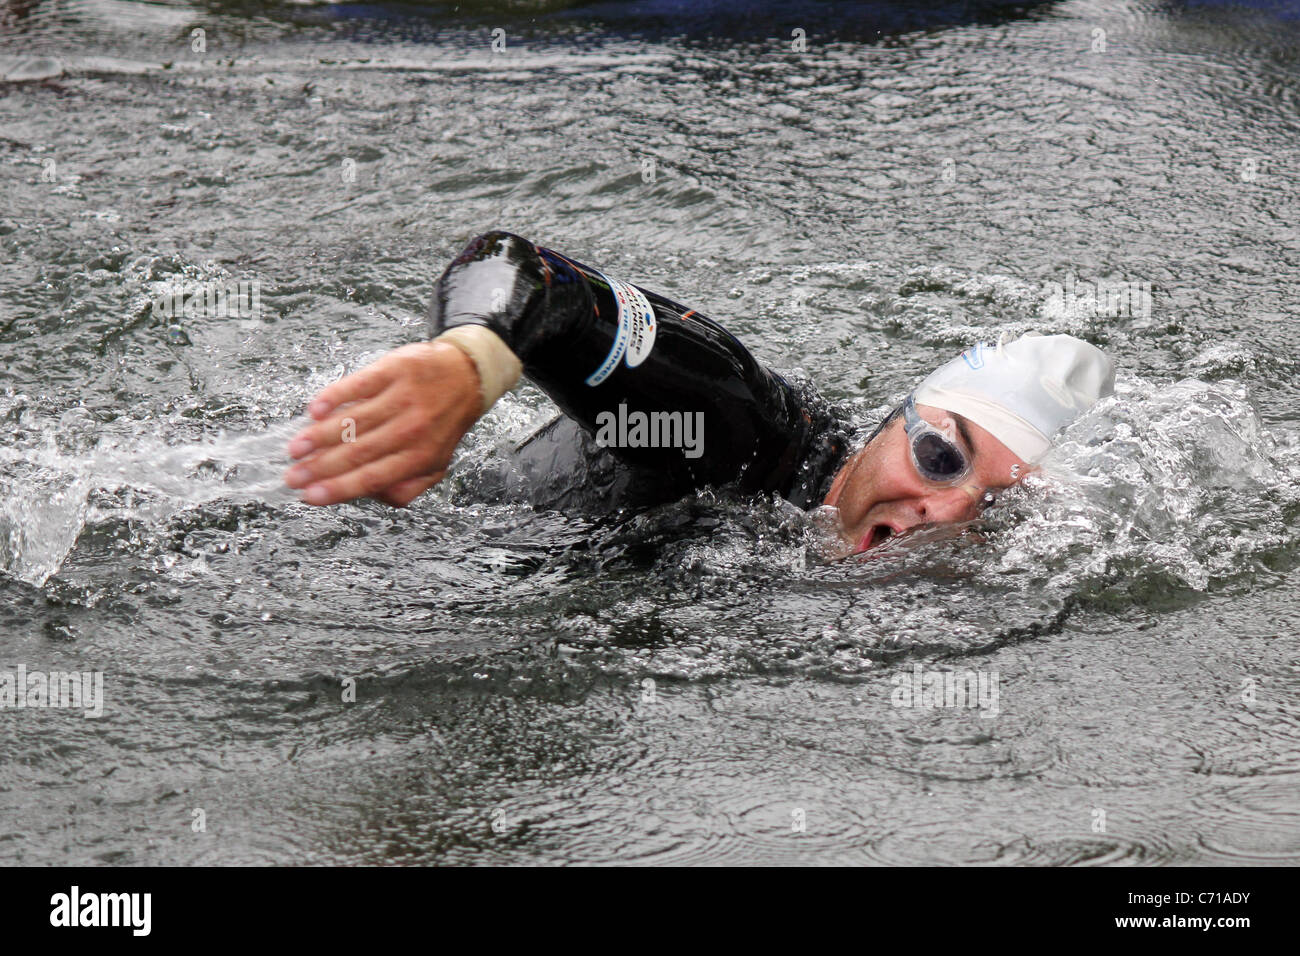 David Walliams nuotare nel Tamigi per Comic Relief 2011 Foto Stock